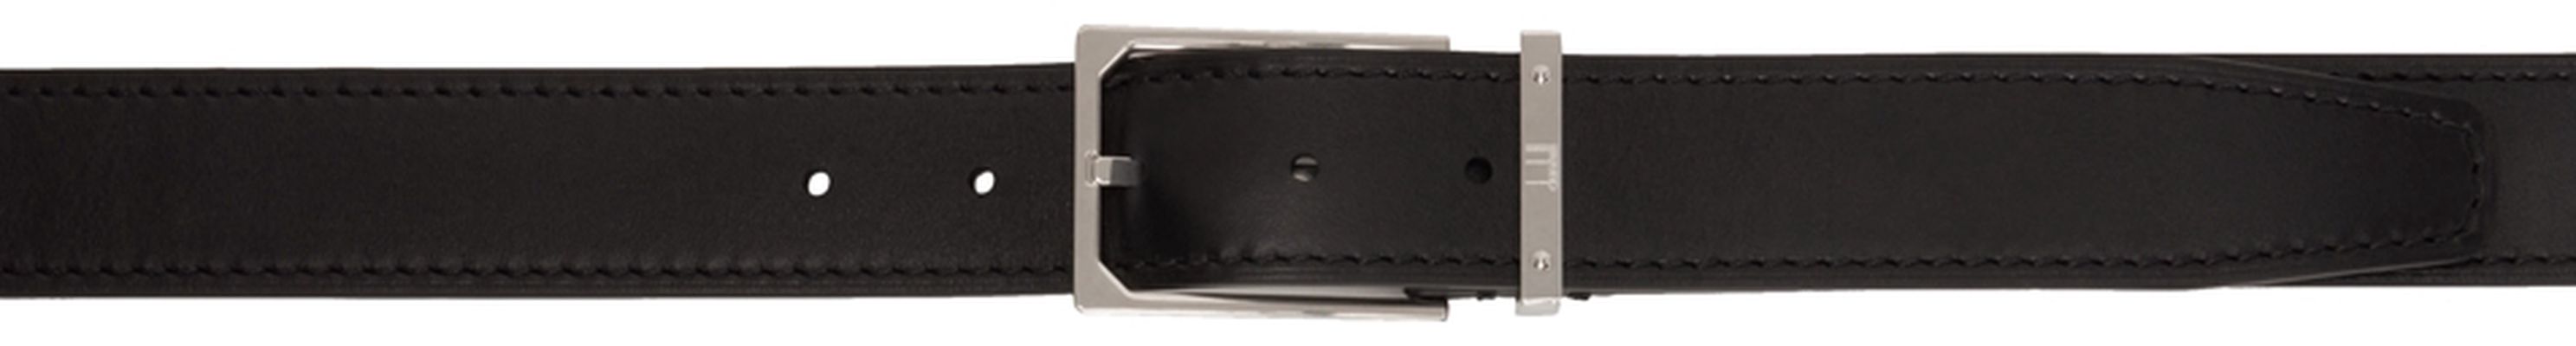 Dunhill Black 35MM Leather Belt